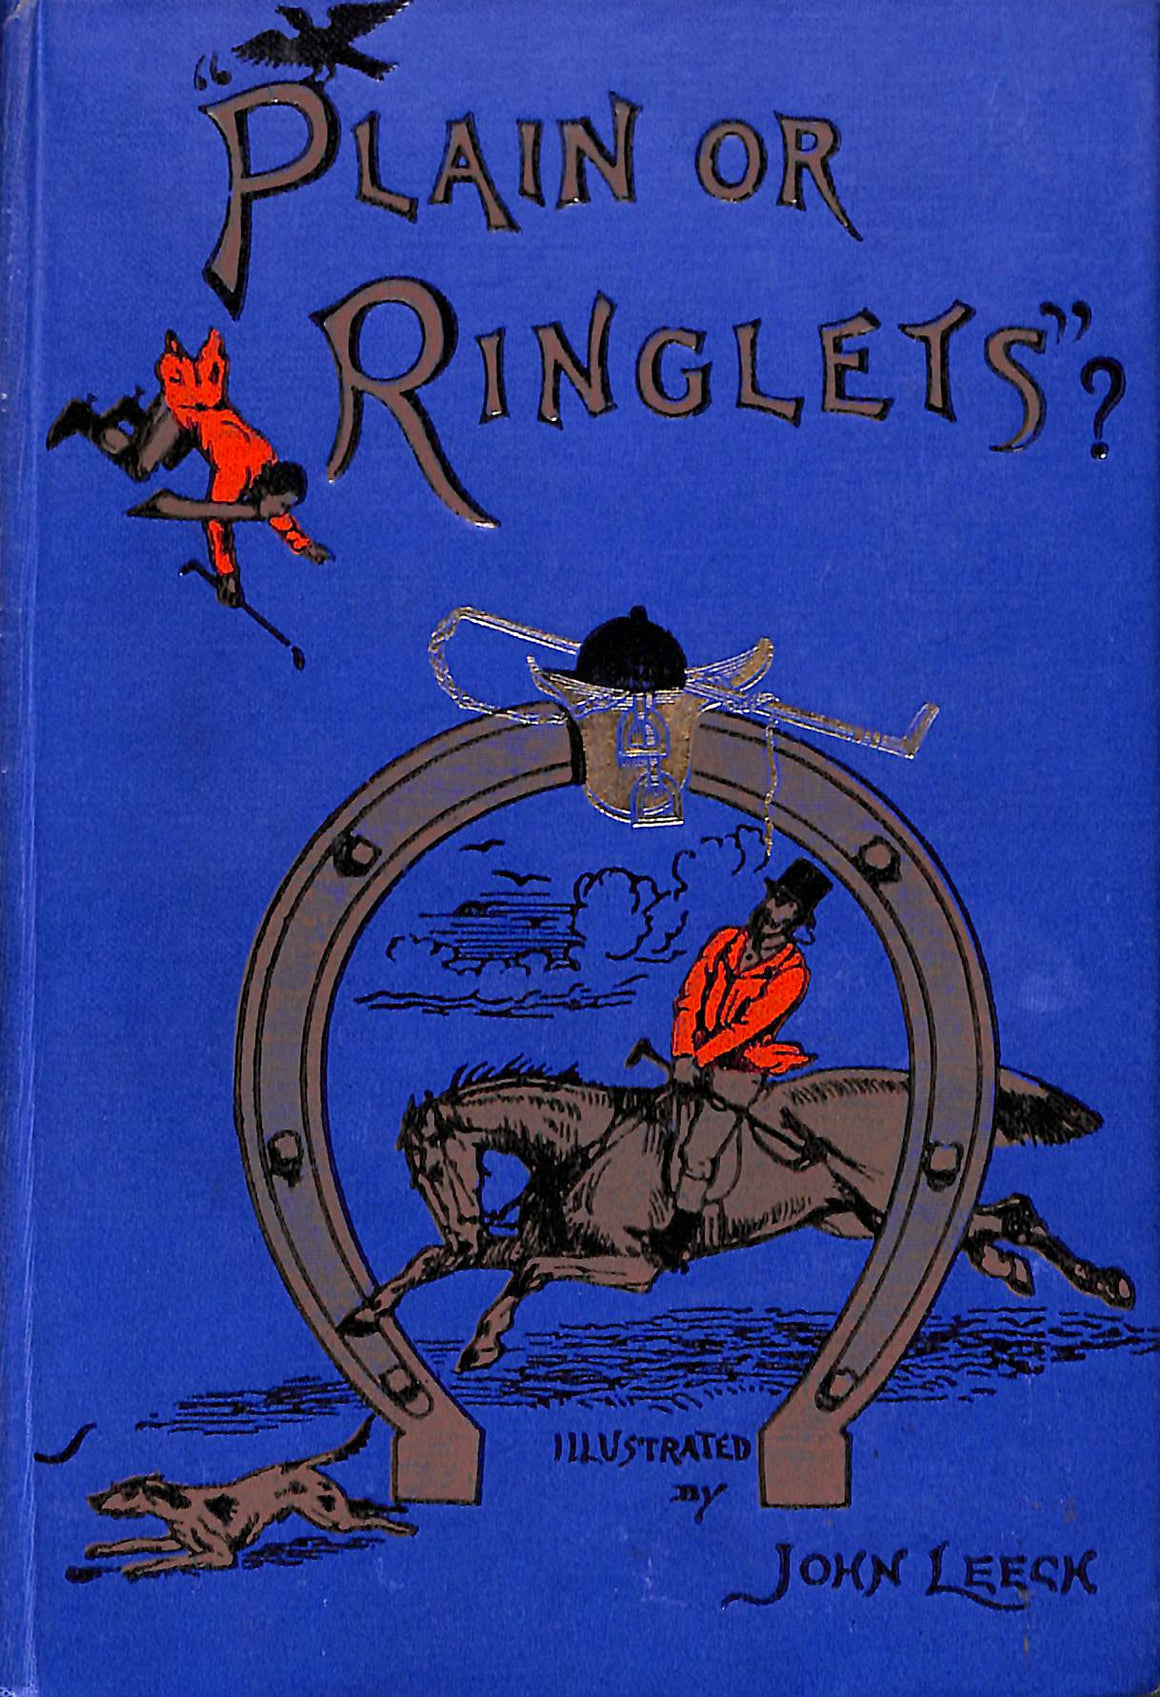 "Plain or Ringlets?"